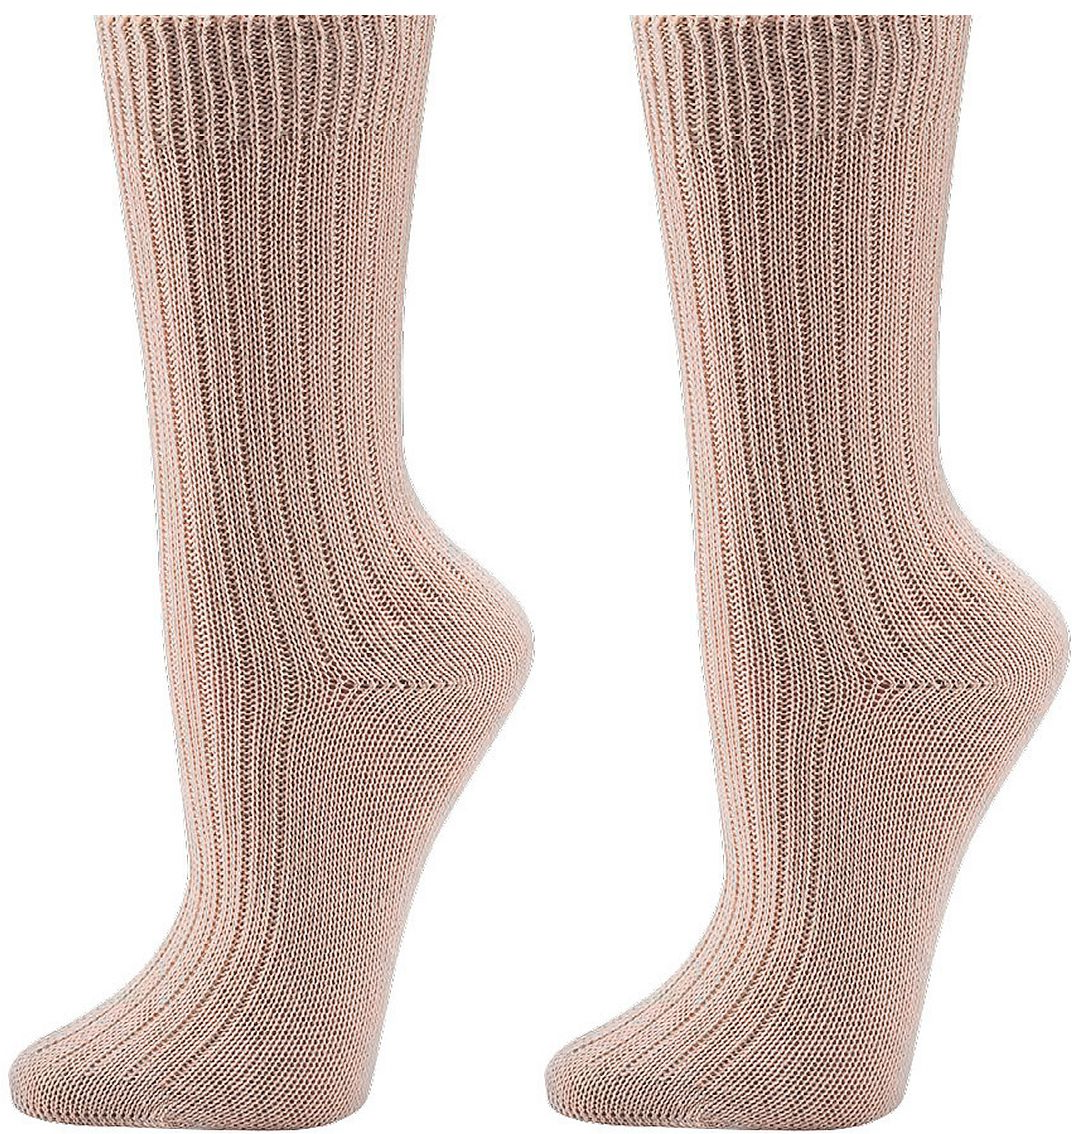 100 %  Bio Baumwolle Socken für Teenager , Damen und Herren  Dicke Qualität   3 Paar